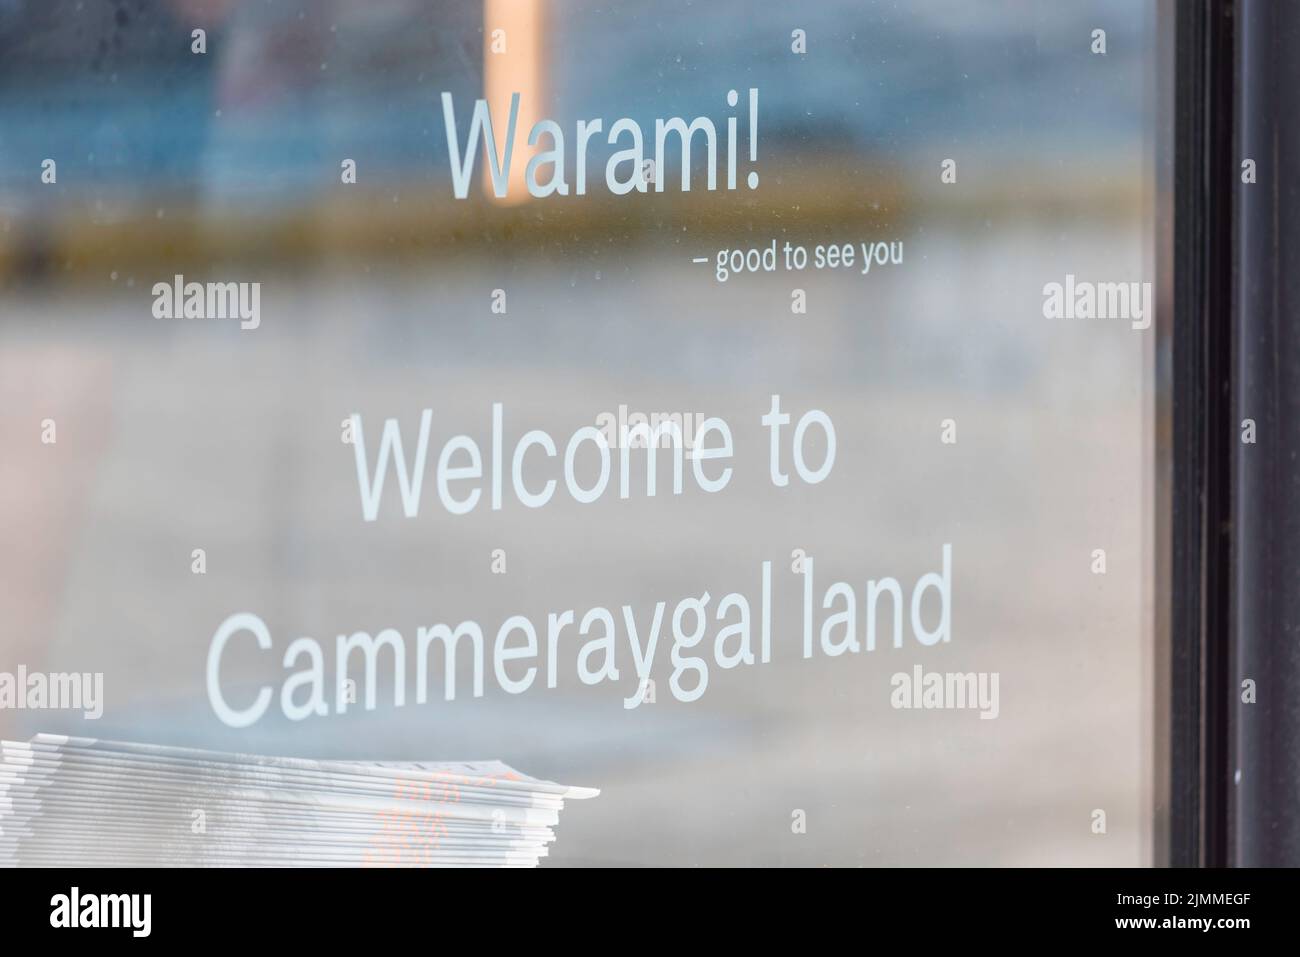 Un cartel en la ventanilla de una tienda que utiliza el idioma de los pueblos indígenas aborígenes locales 'Warami' que significa 'Good to See You' en la Tierra de Cammeraygal en Sydney, Australia Foto de stock